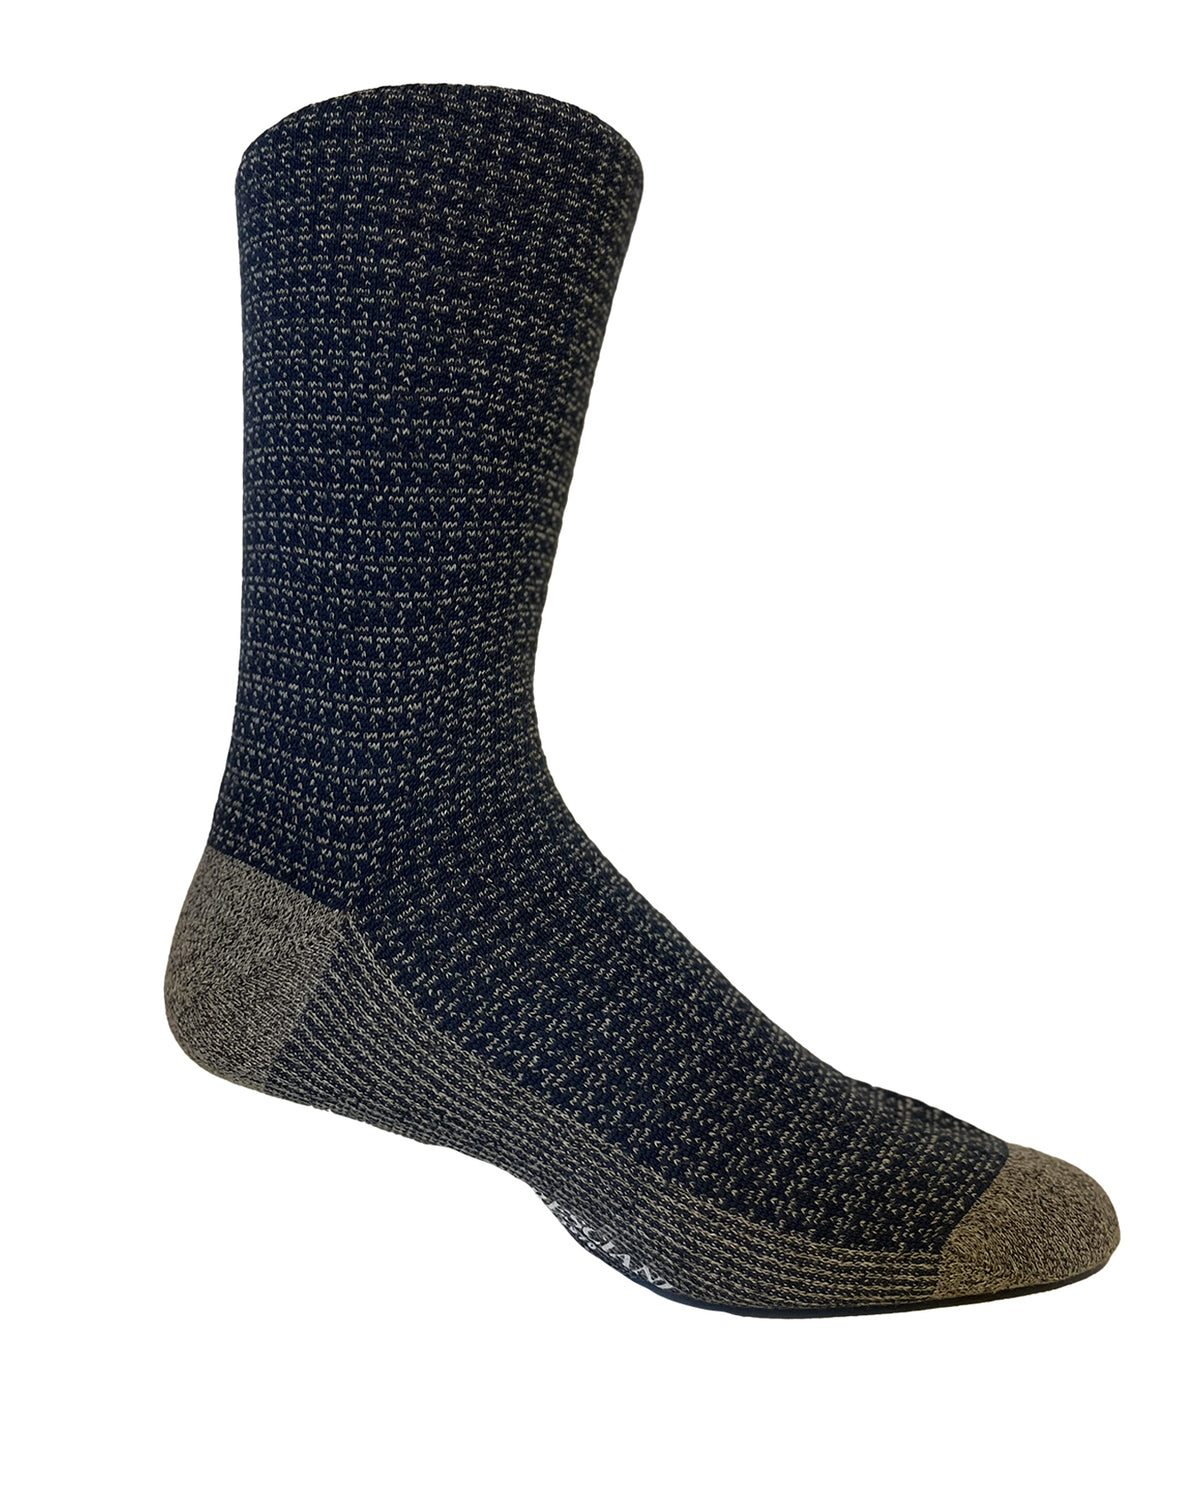 Calf Length Socks - Blue